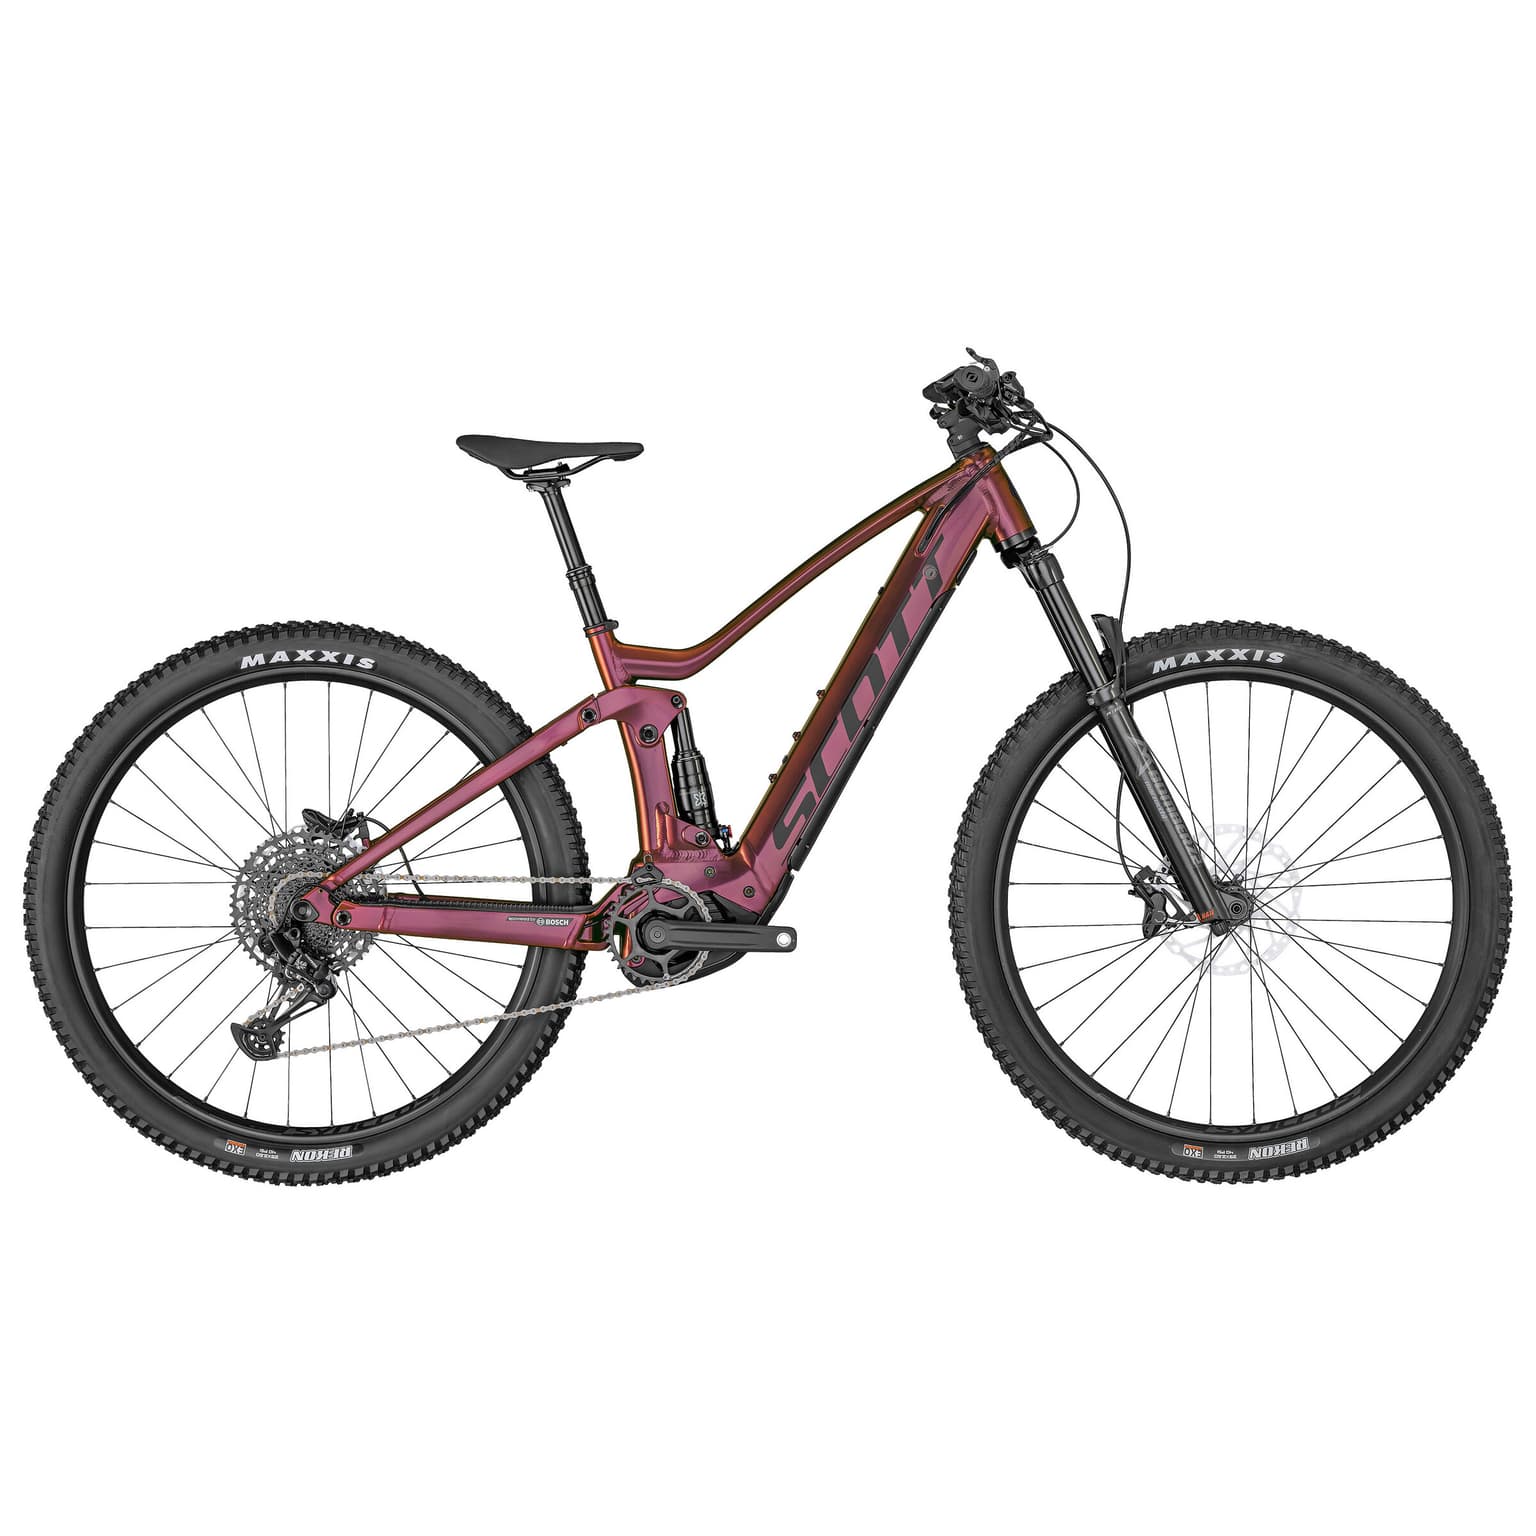 Scott Scott Contessa Strike eRide 910 29 Mountain bike elettrica (Fully) bordeaux 1